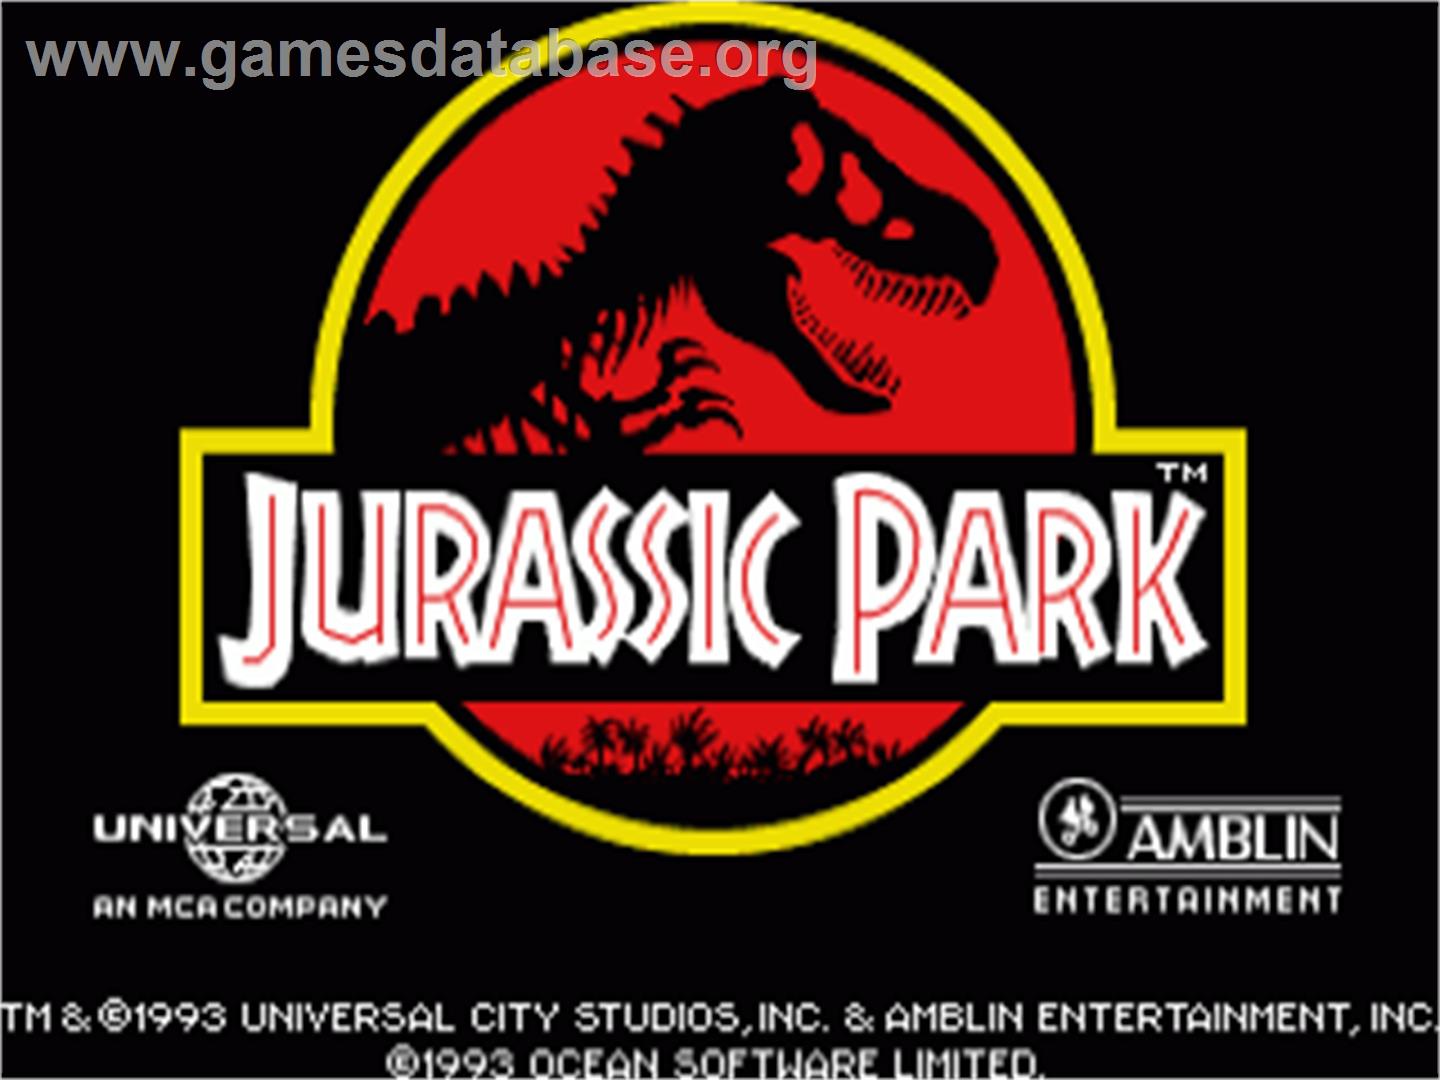 Jurassic Park - Commodore Amiga - Artwork - Title Screen